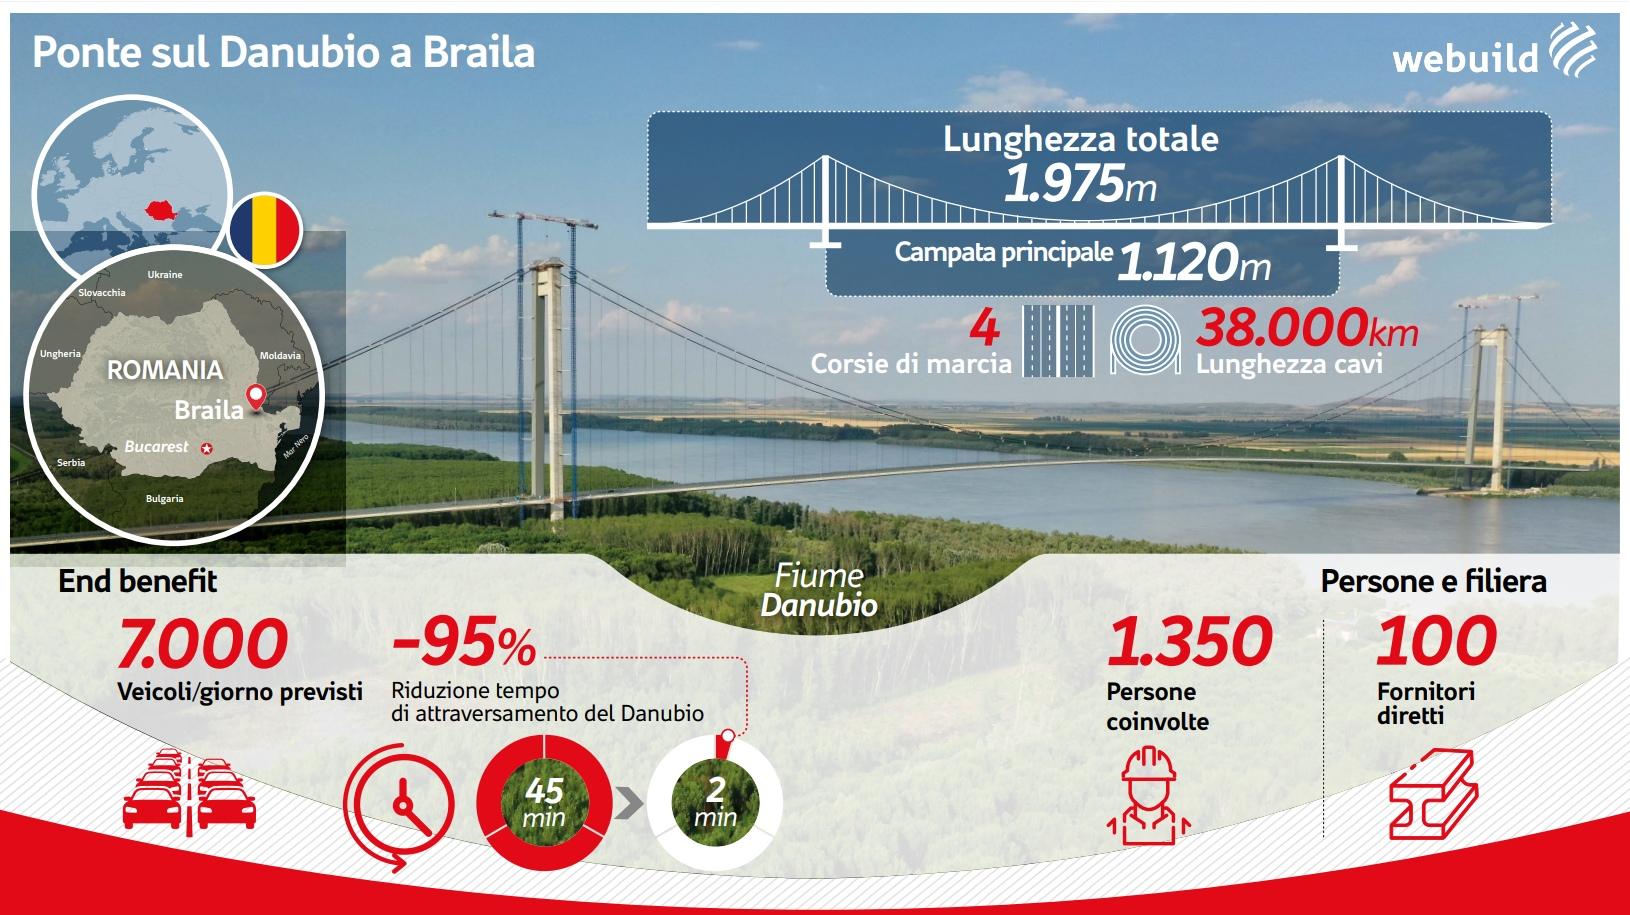 Ponte sul Danubio a Braila (Romania) - Webuild